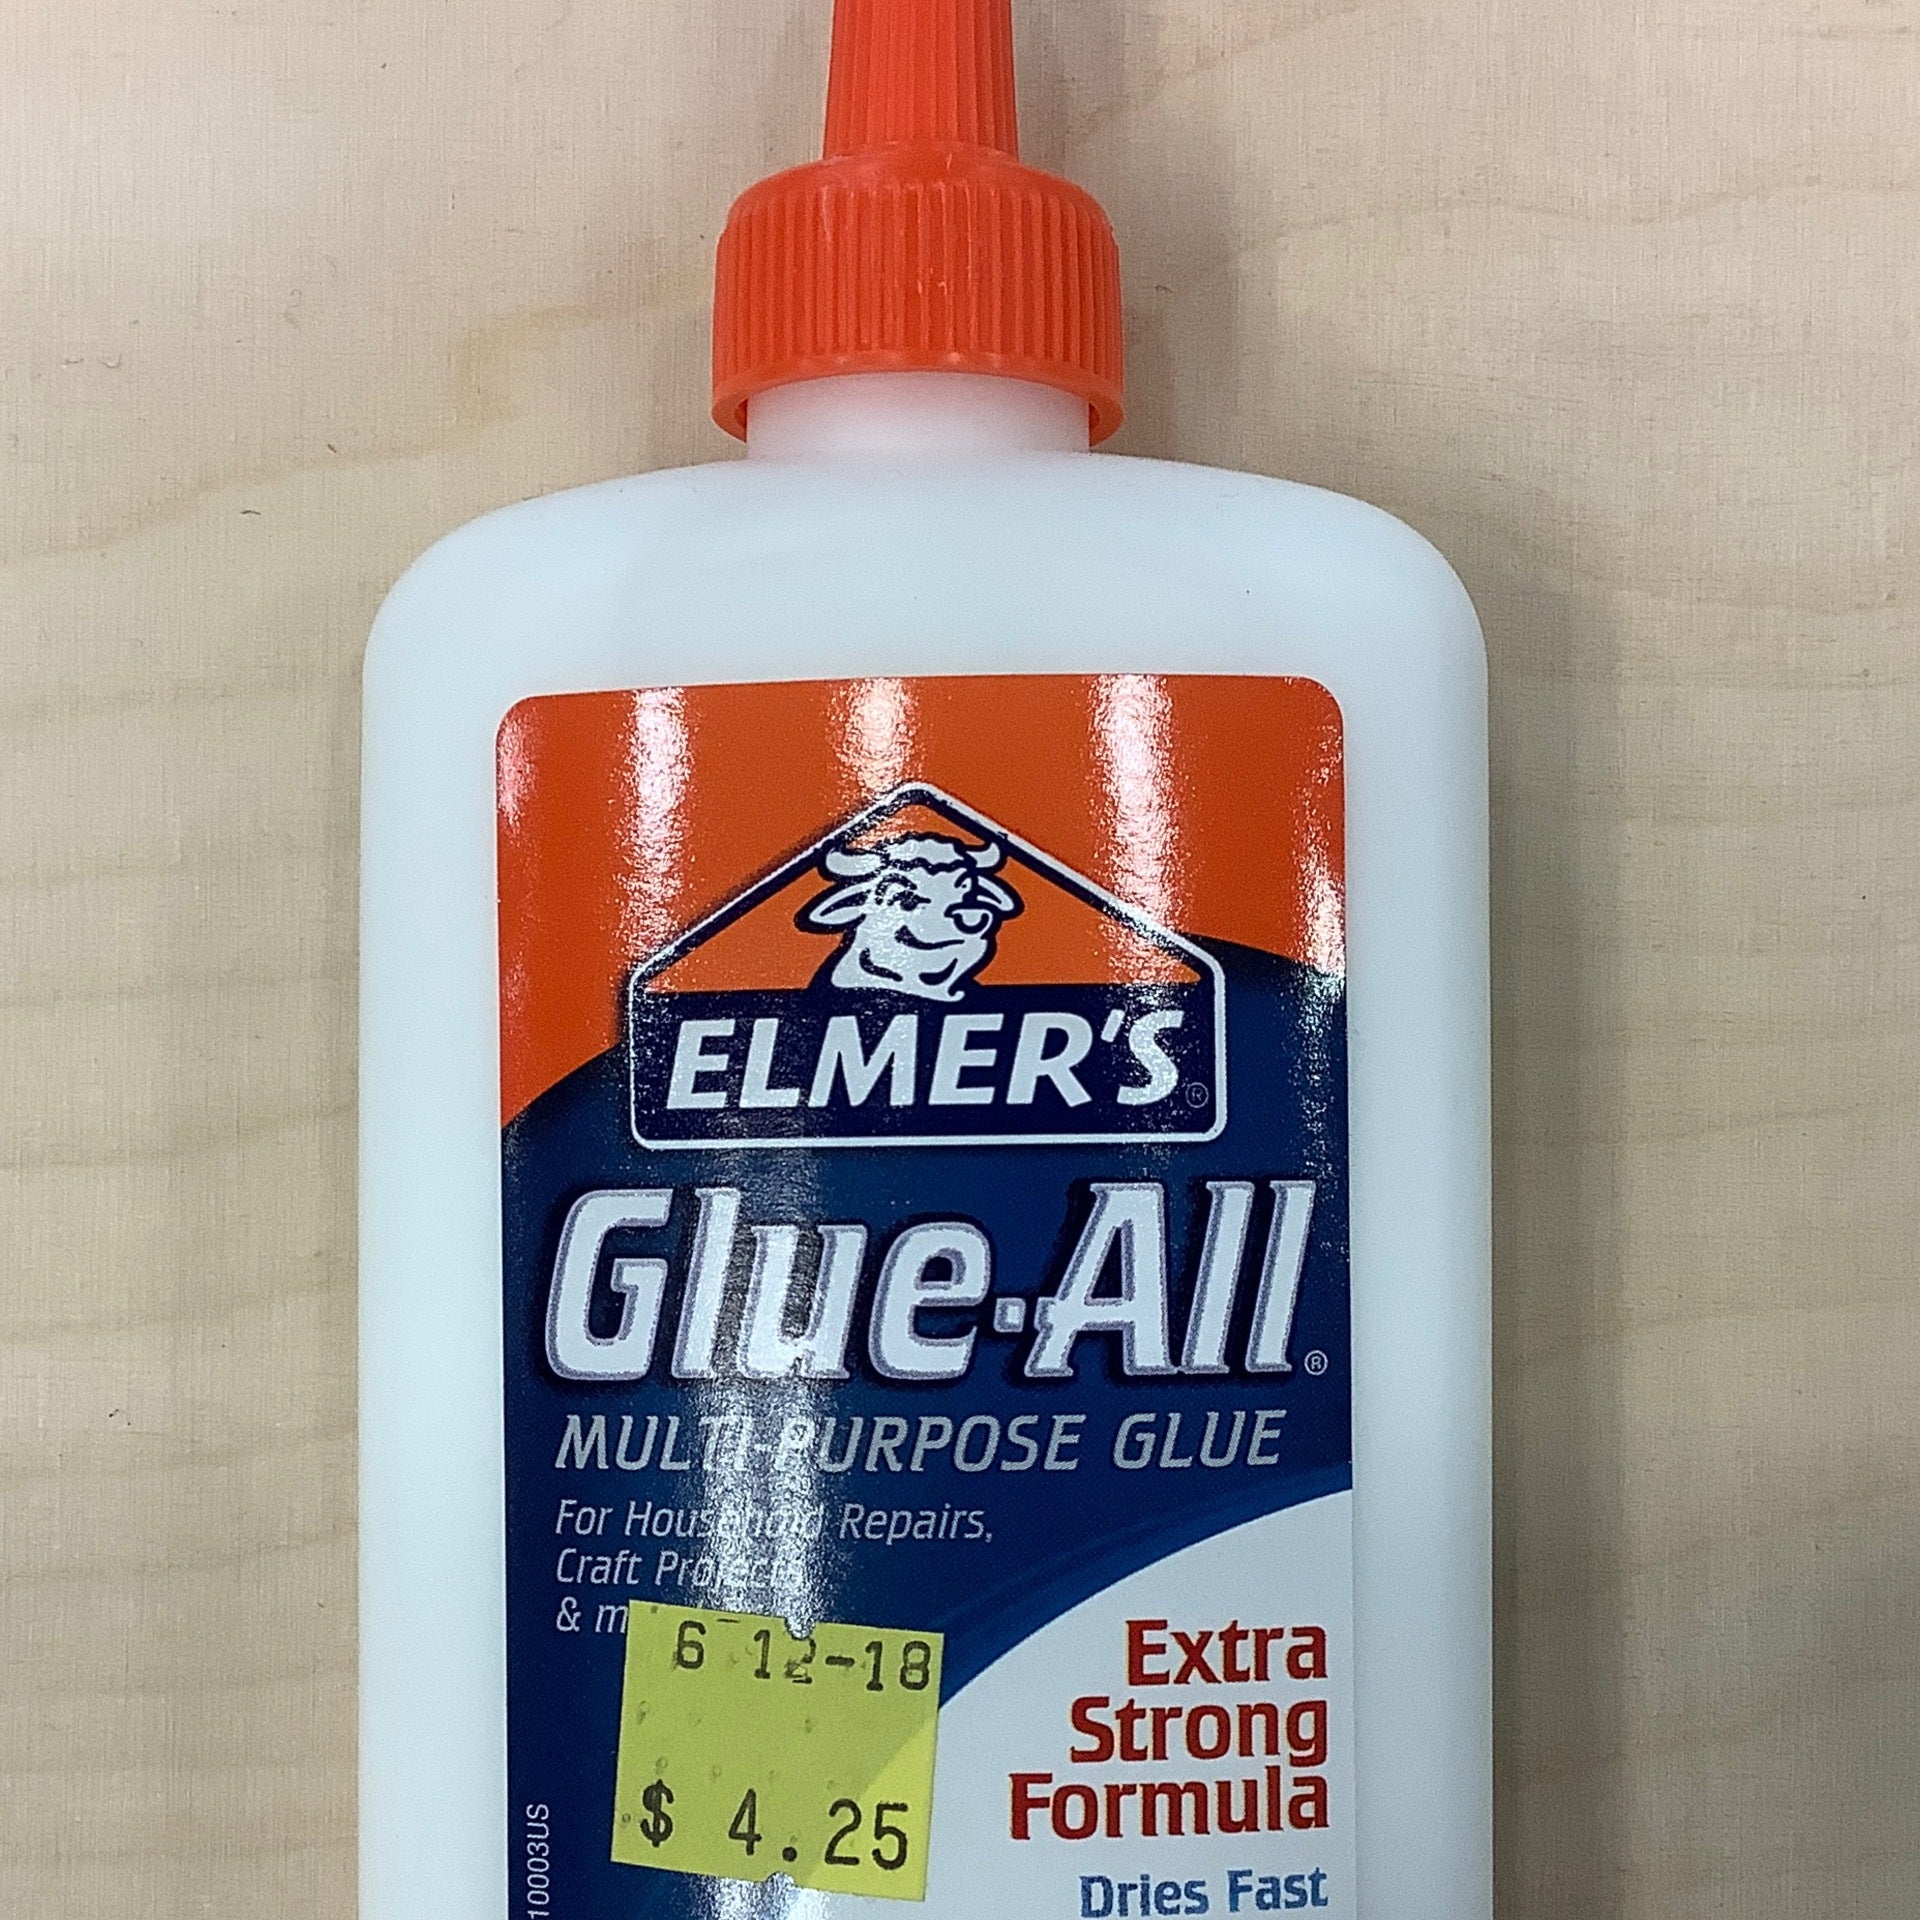 UHU Glue Stick .74 oz (21g)